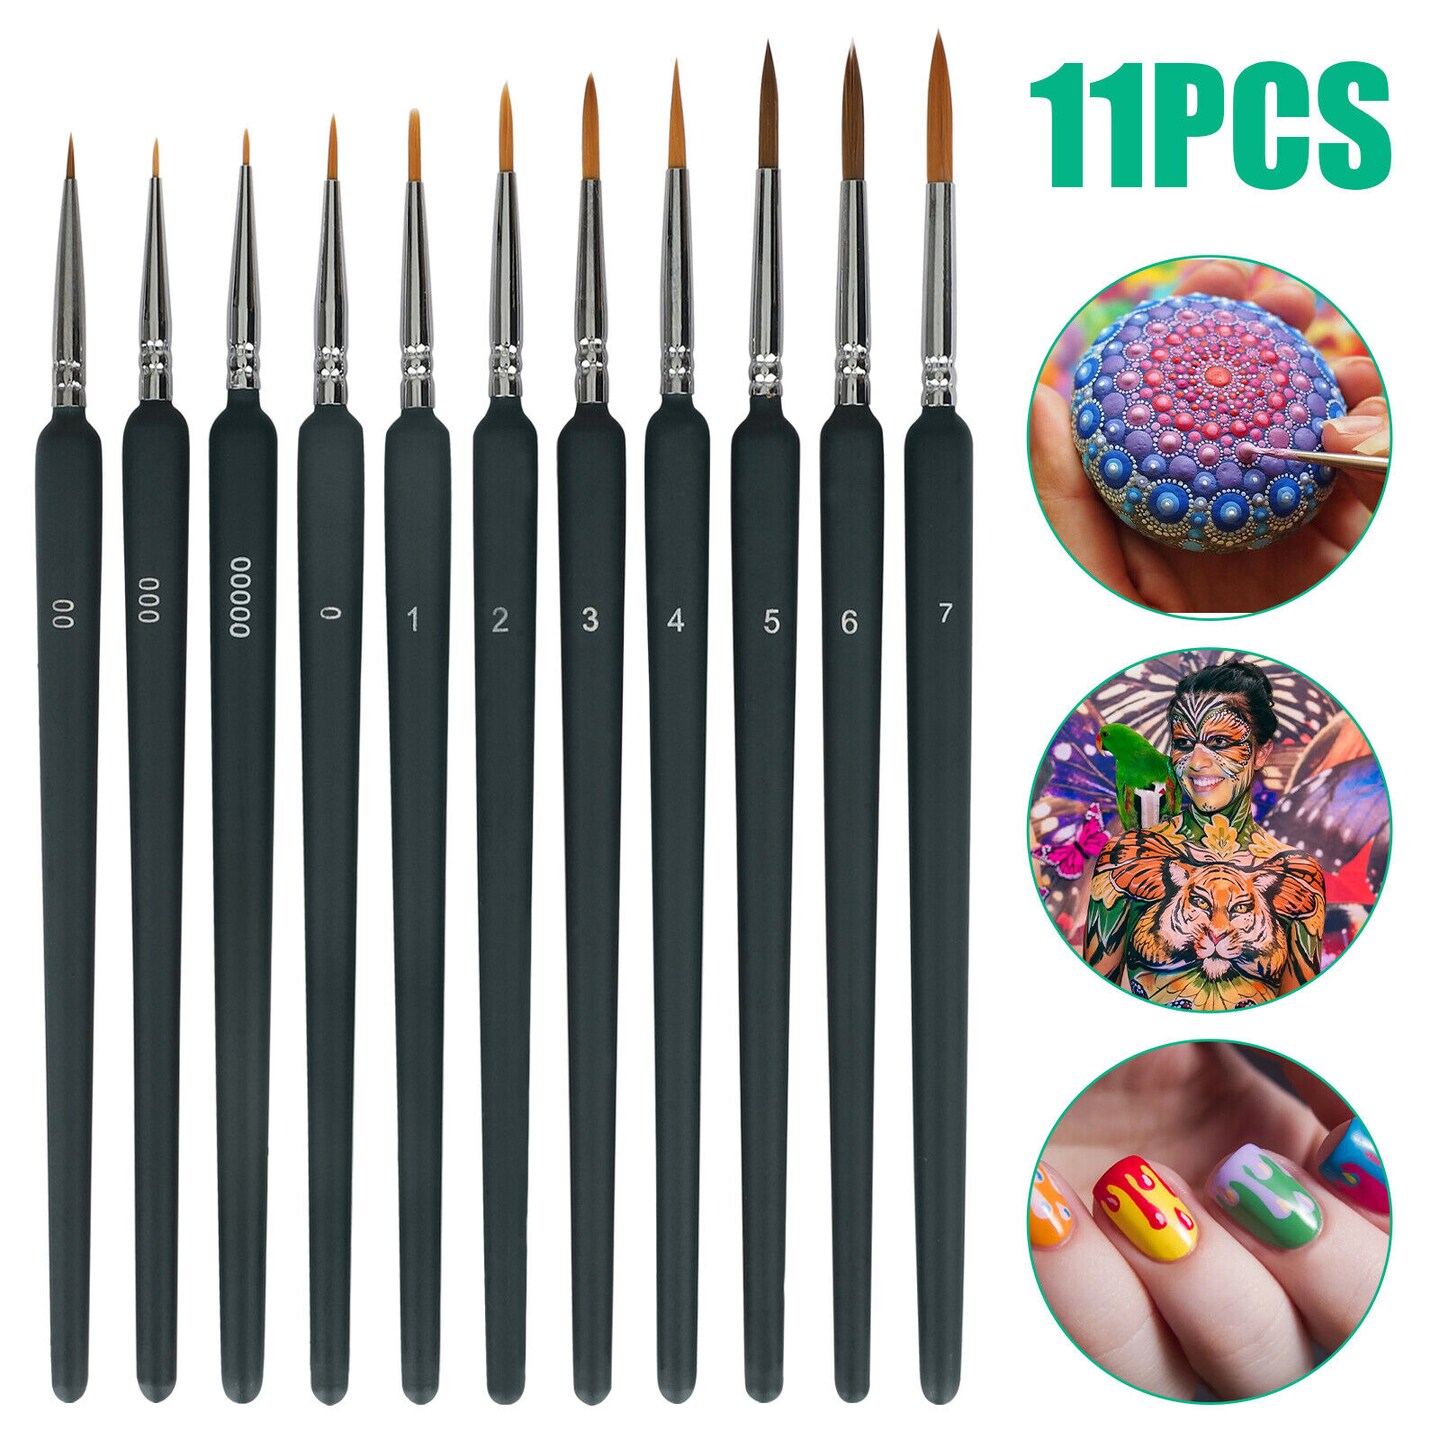 Miniature Paint Brushes, 11Pcs Nail Art Brushes - Fine Detail